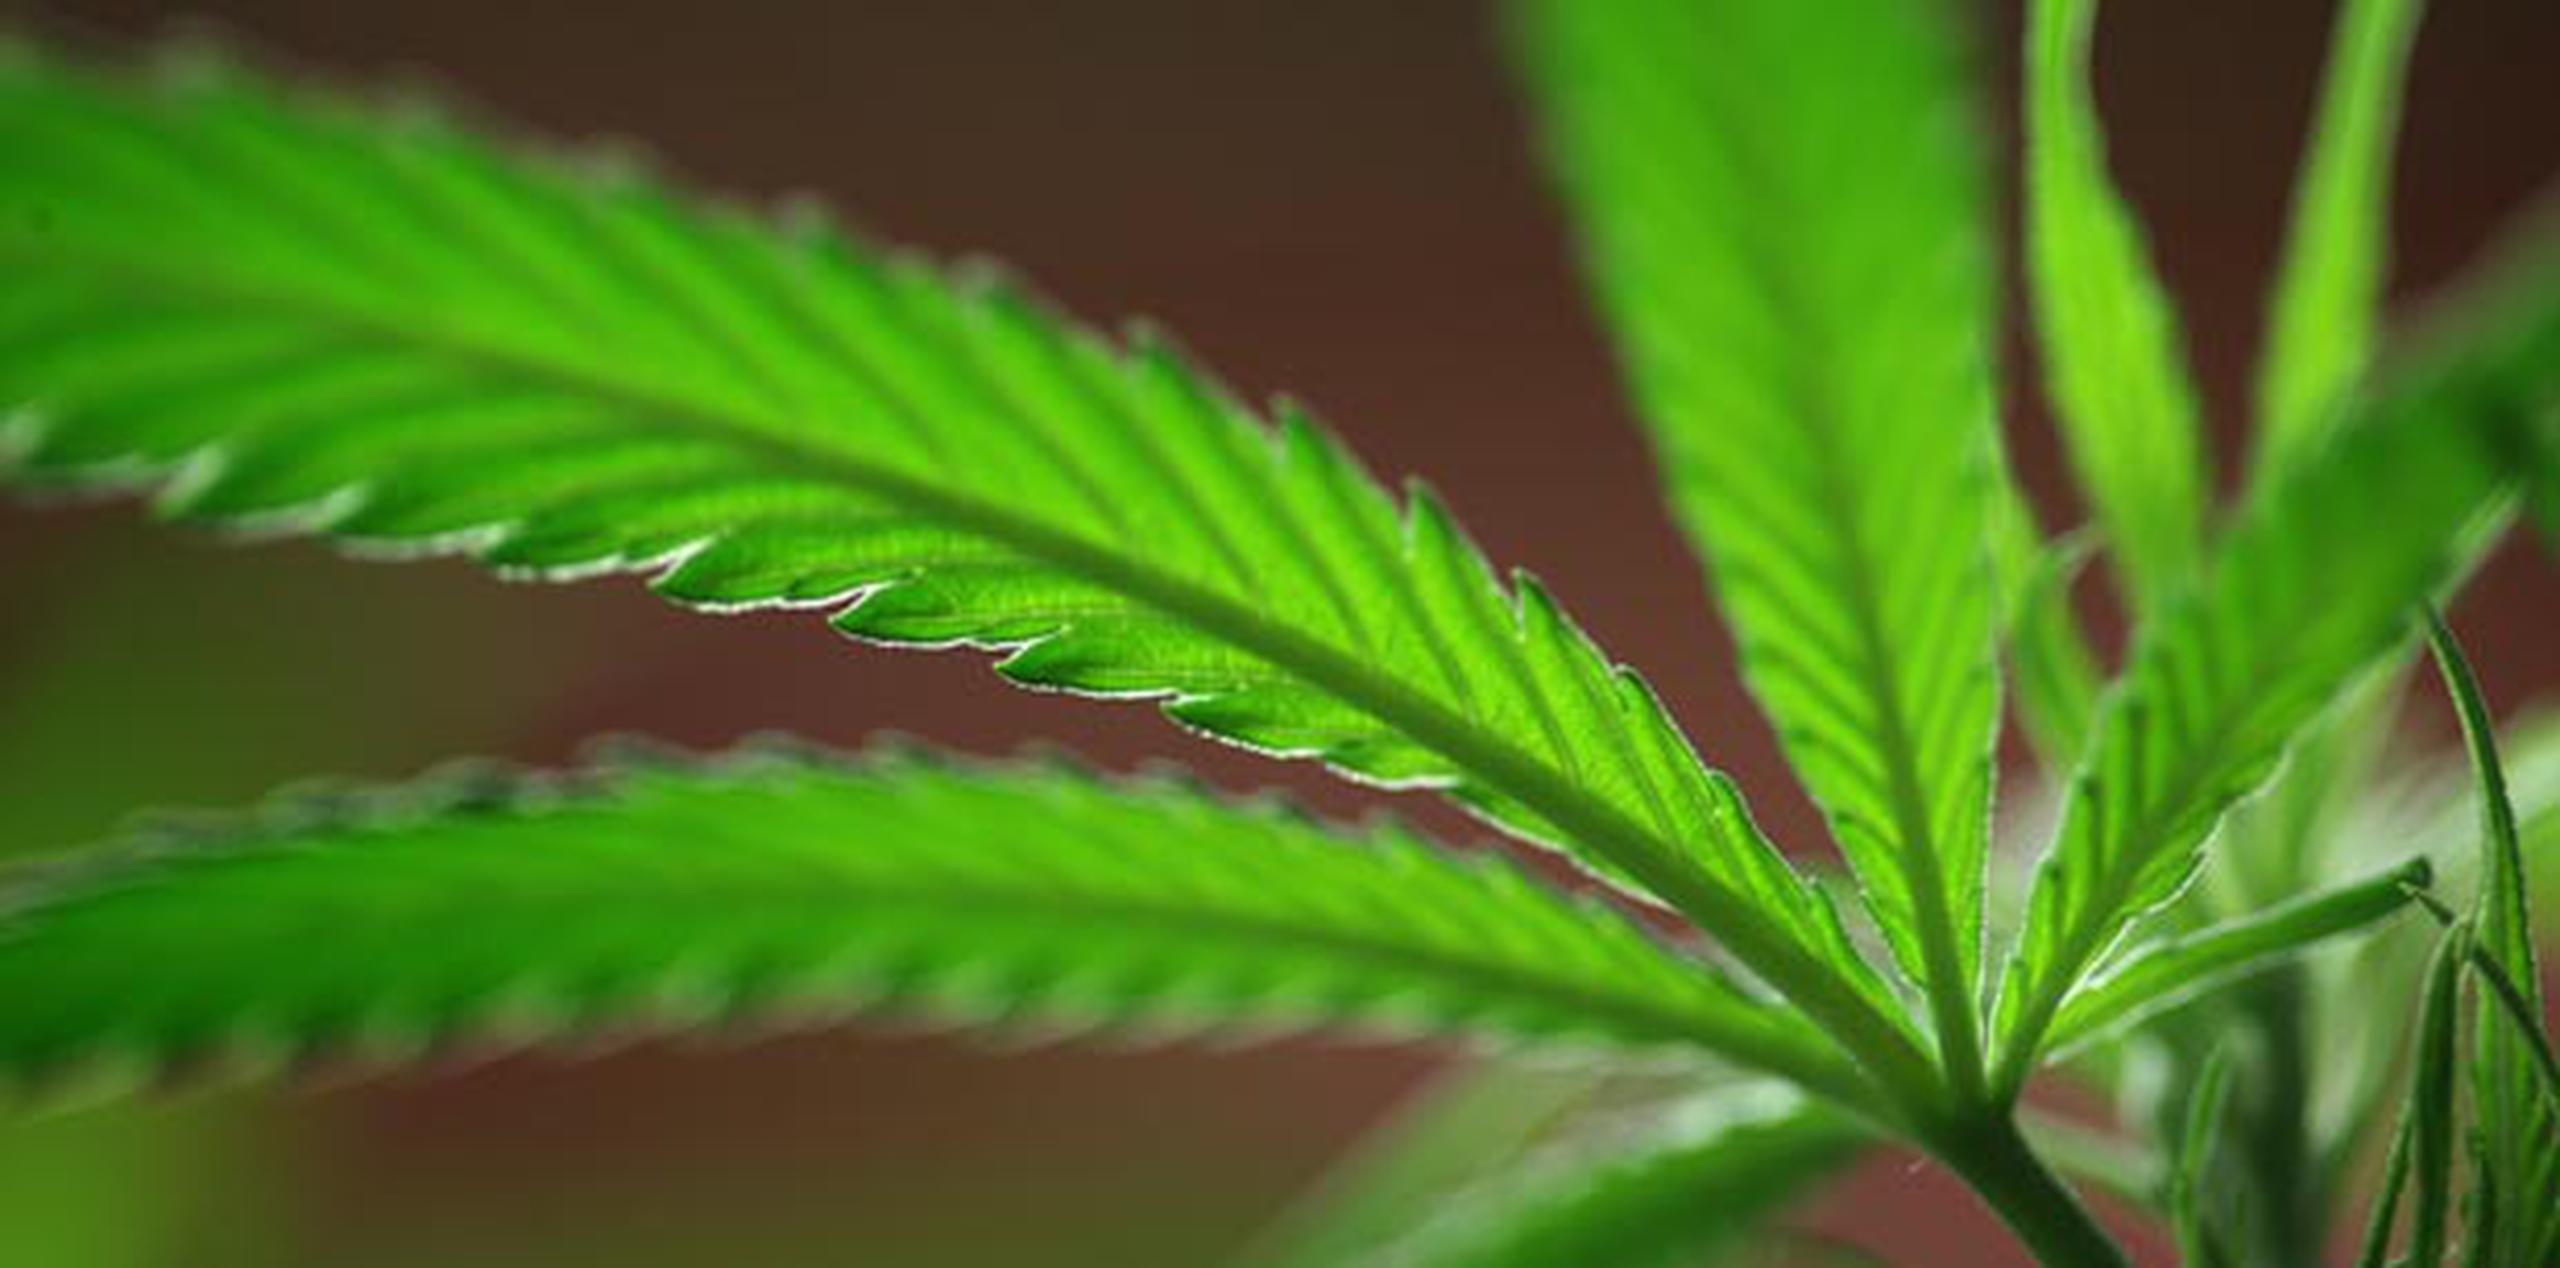 De acuerdo con el borrador circulado por el Departamento de Salud, los médicos estarían autorizados a recomendar el uso de la marihuana para propósitos medicinales. (Archivo)